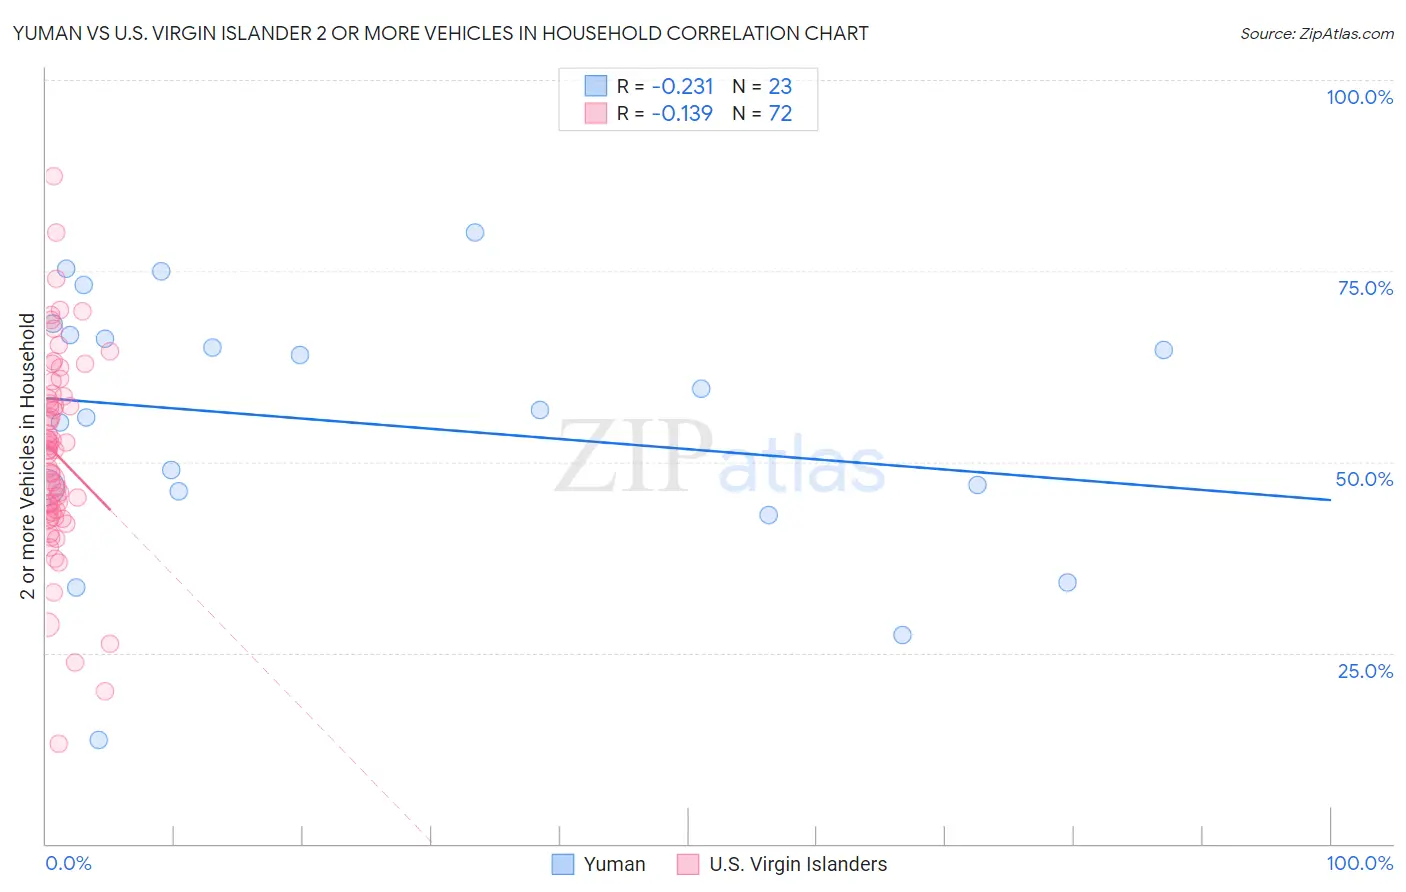 Yuman vs U.S. Virgin Islander 2 or more Vehicles in Household